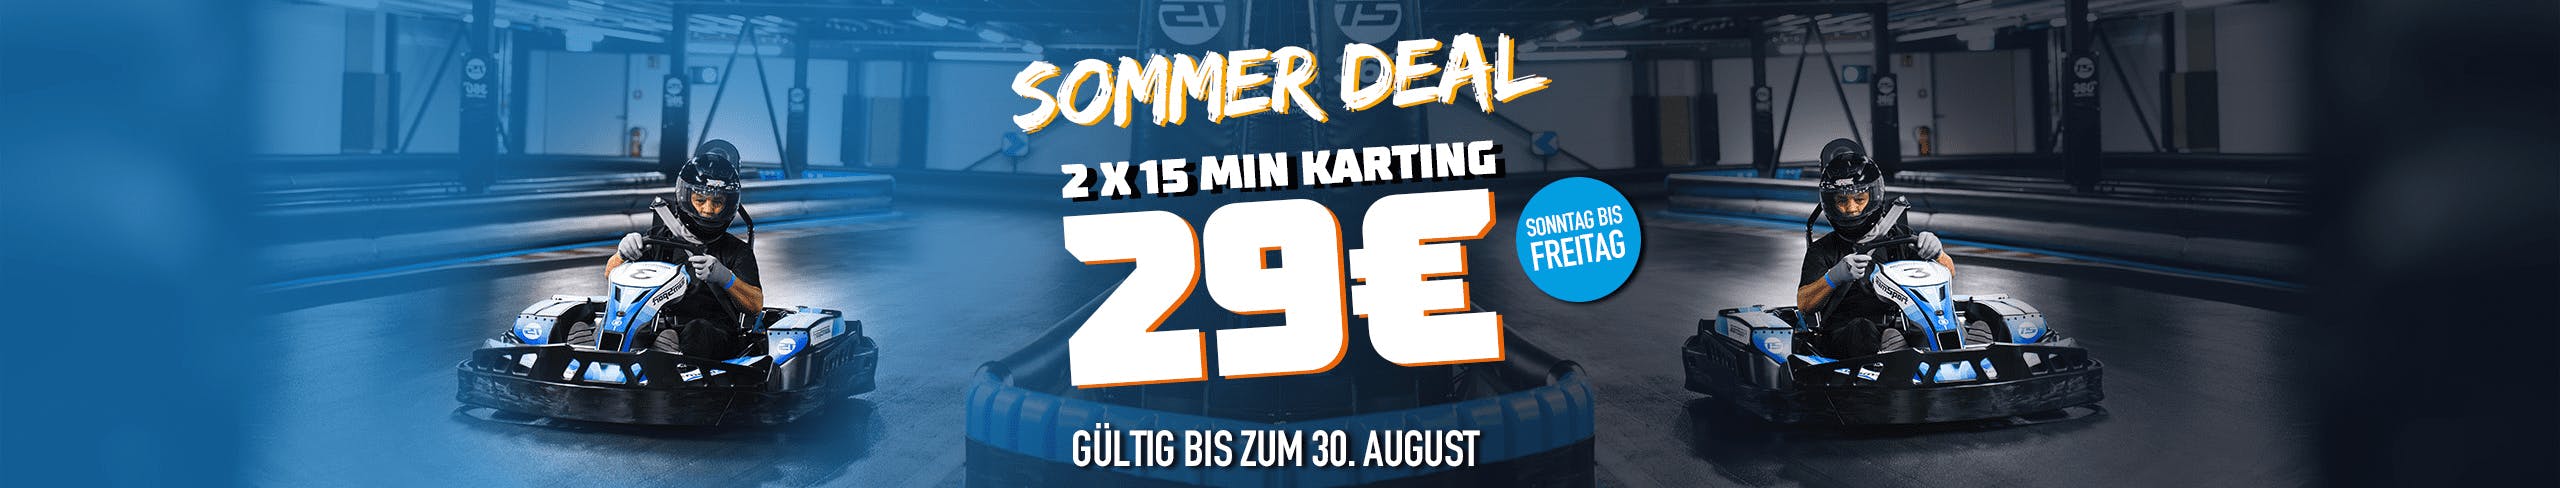 Sommer Special 2x 15min Karting Für 29€